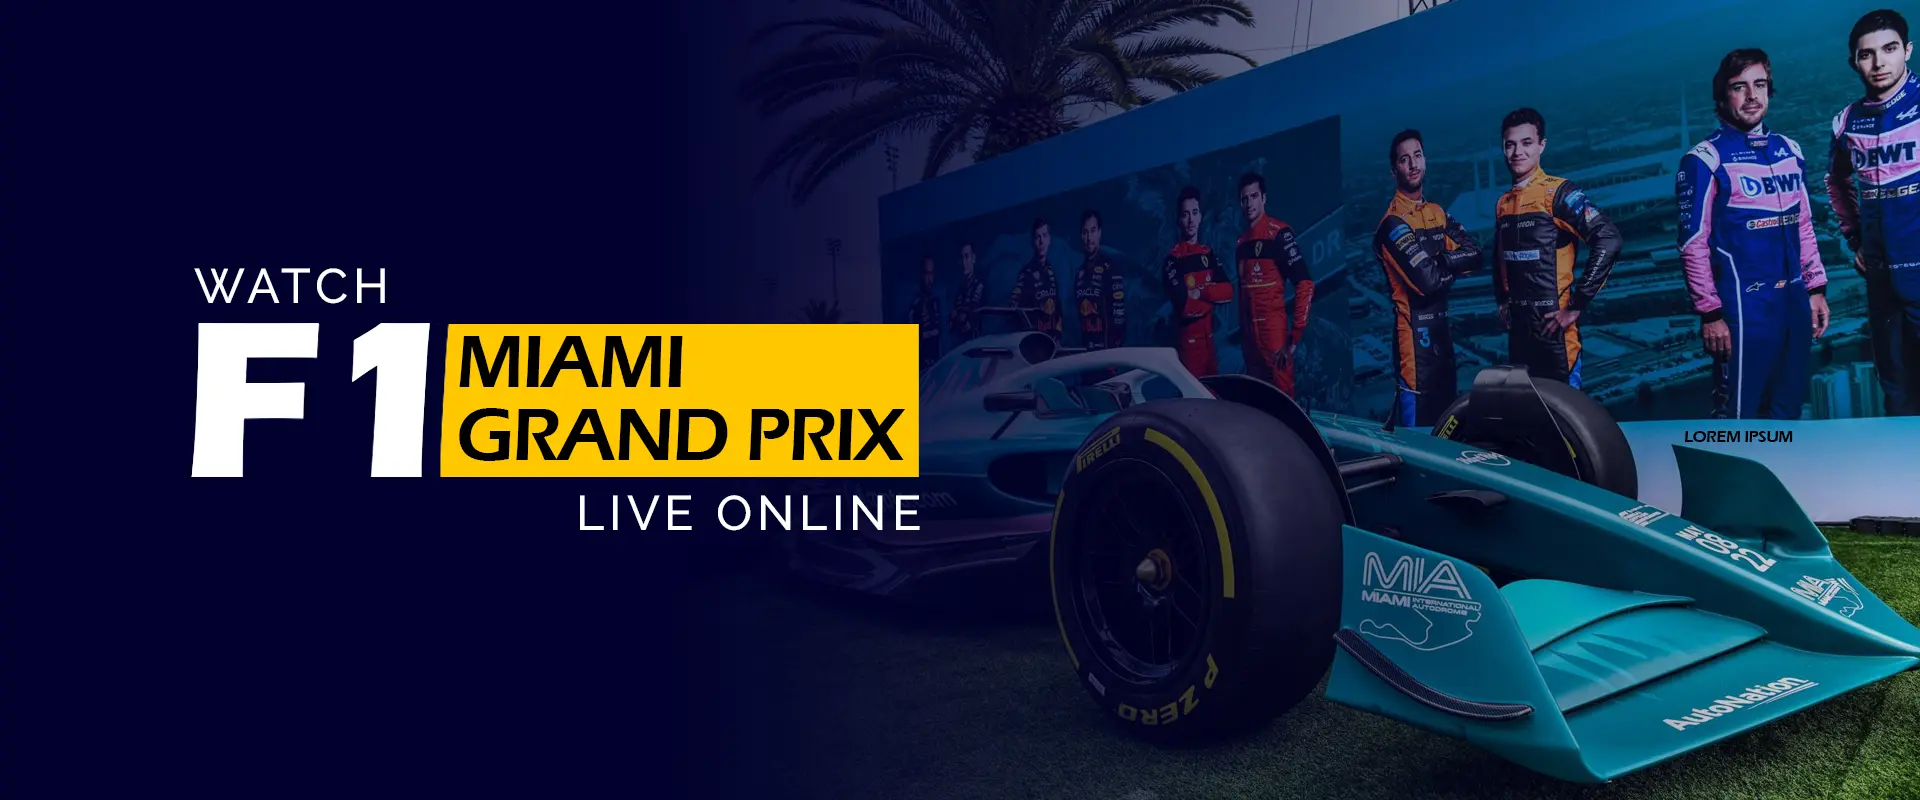 Se F1 Miami Grand Prix live online